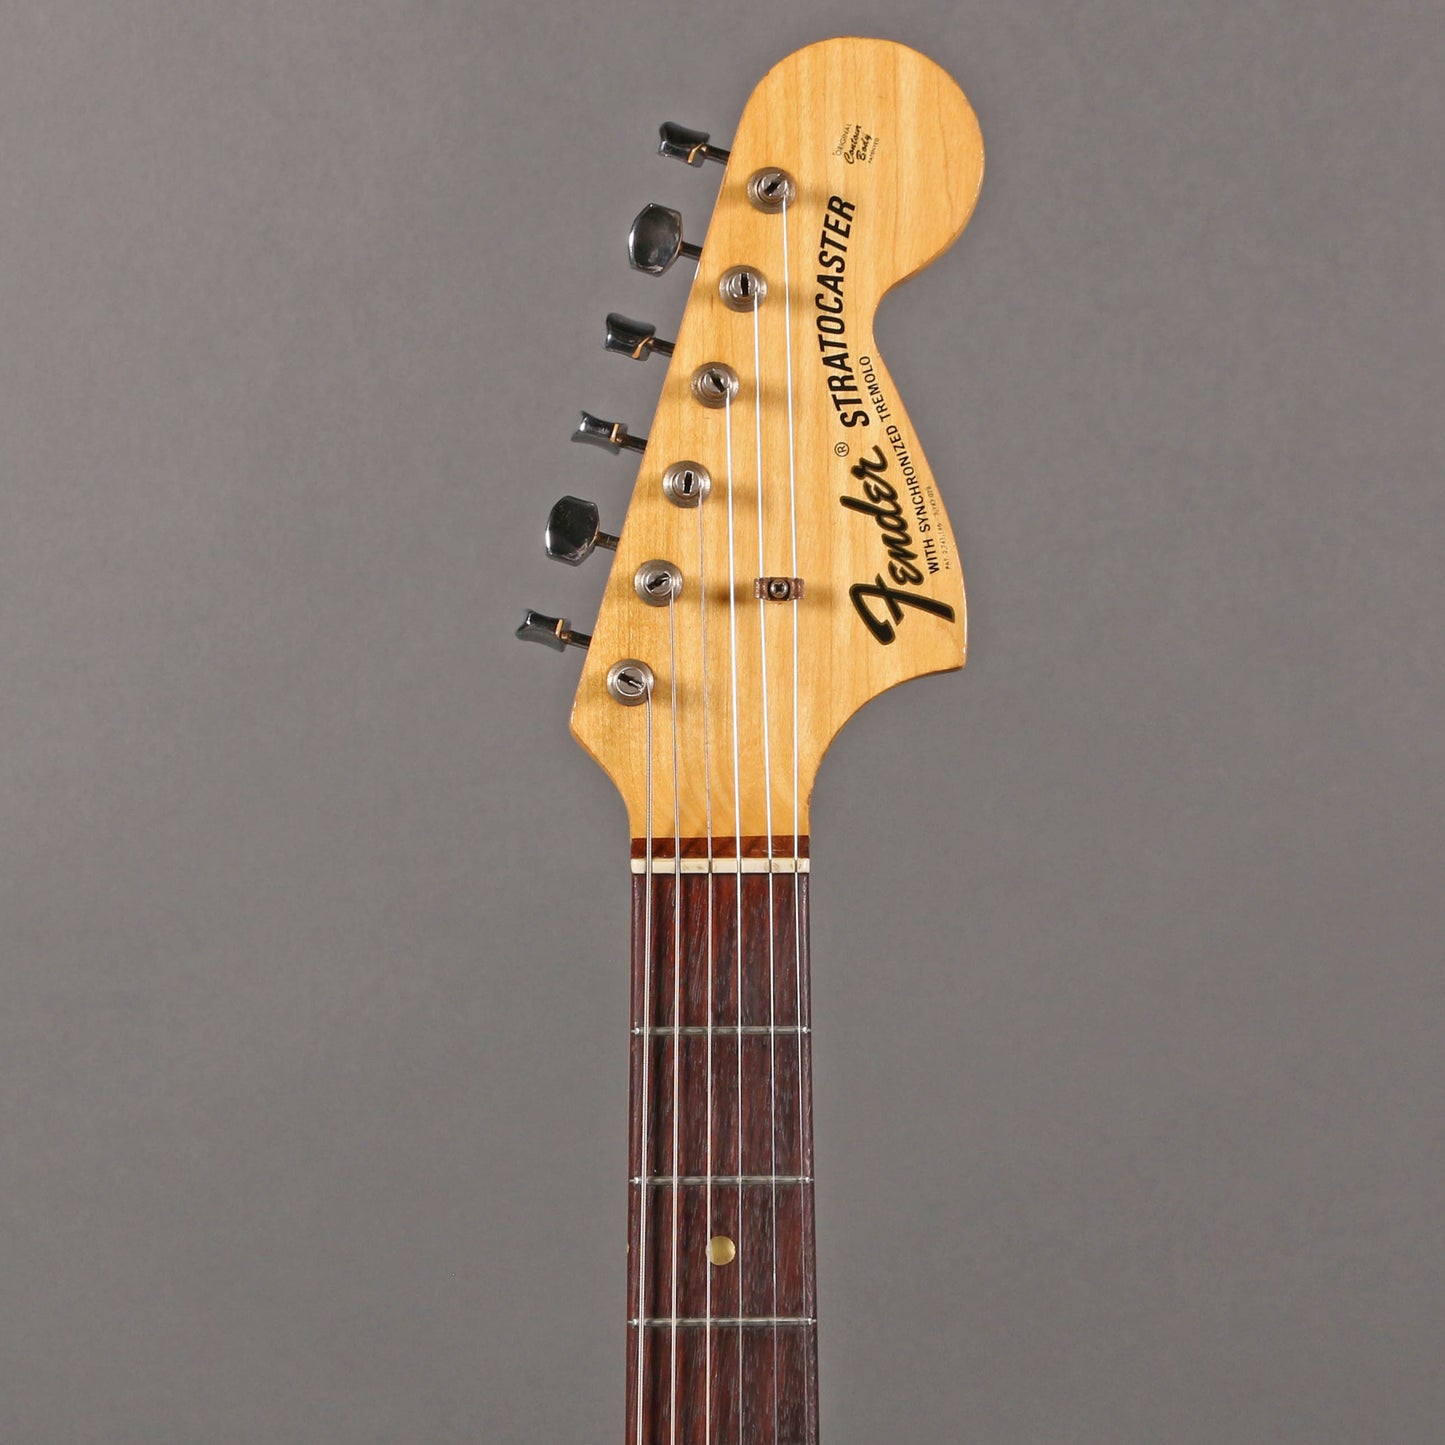 1969 Fender Stratocaster